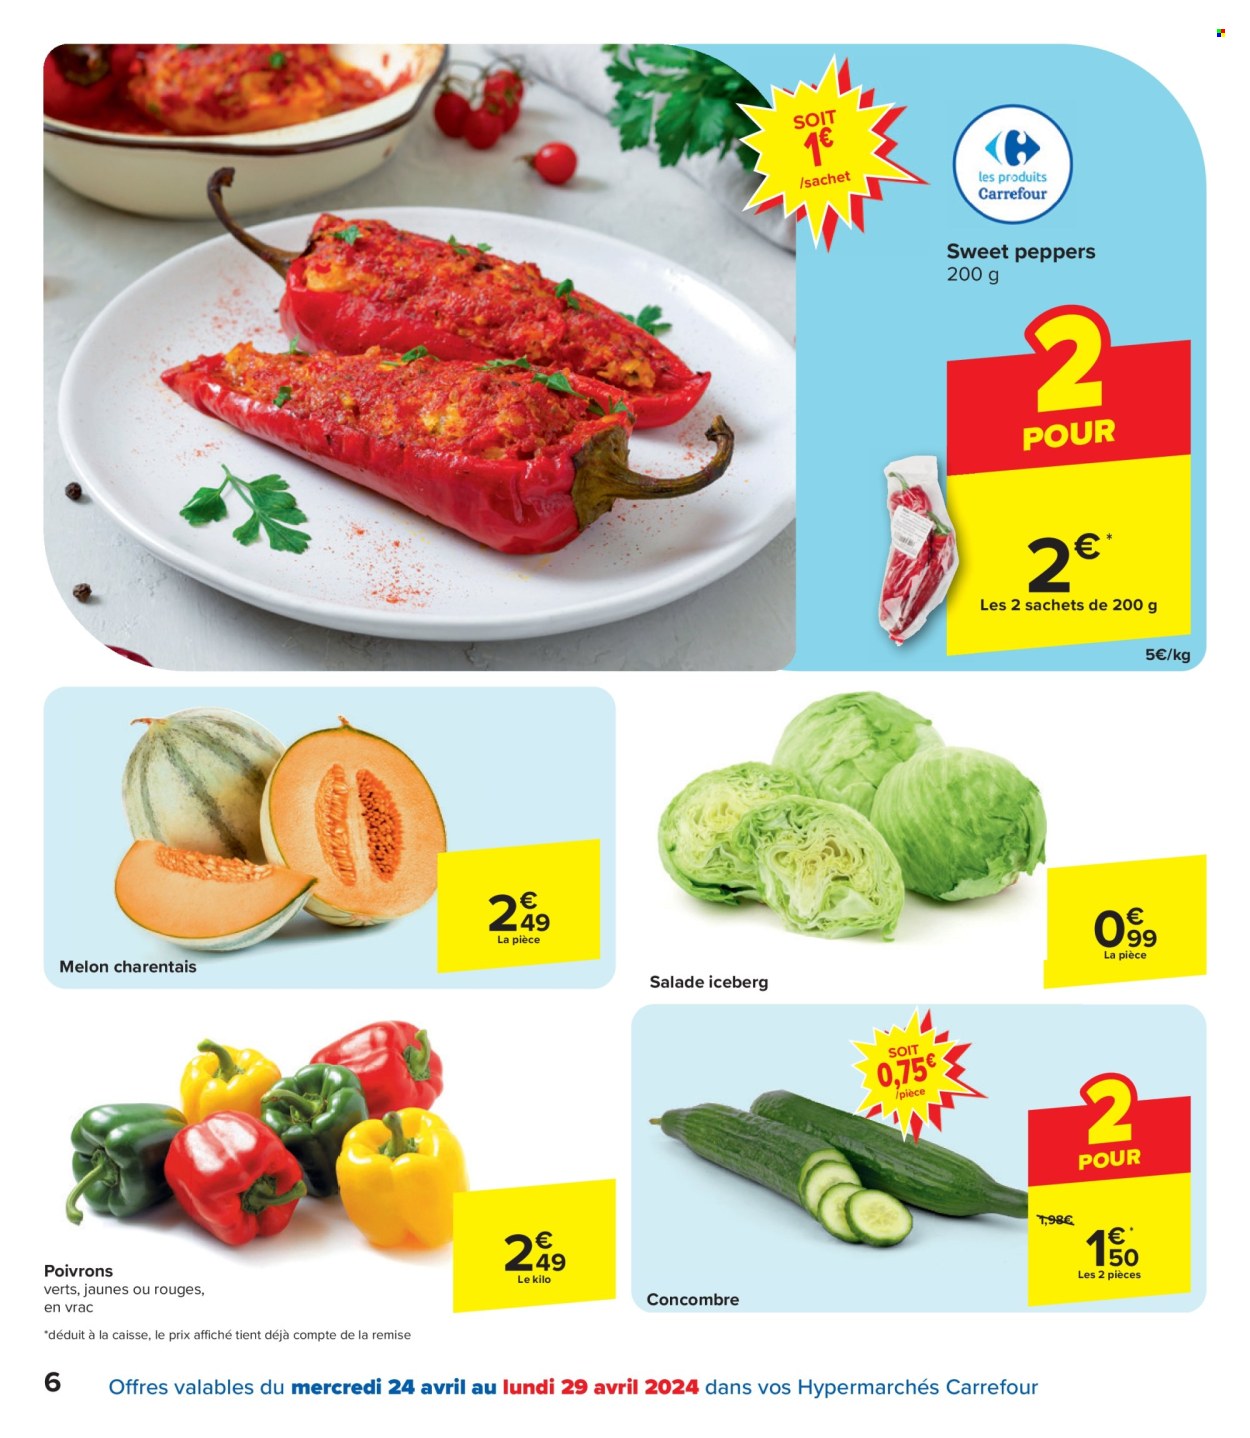 thumbnail - Catalogue Carrefour hypermarkt - 24/04/2024 - 06/05/2024 - Produits soldés - salade, concombre, poivrons, iceberg, melon. Page 6.